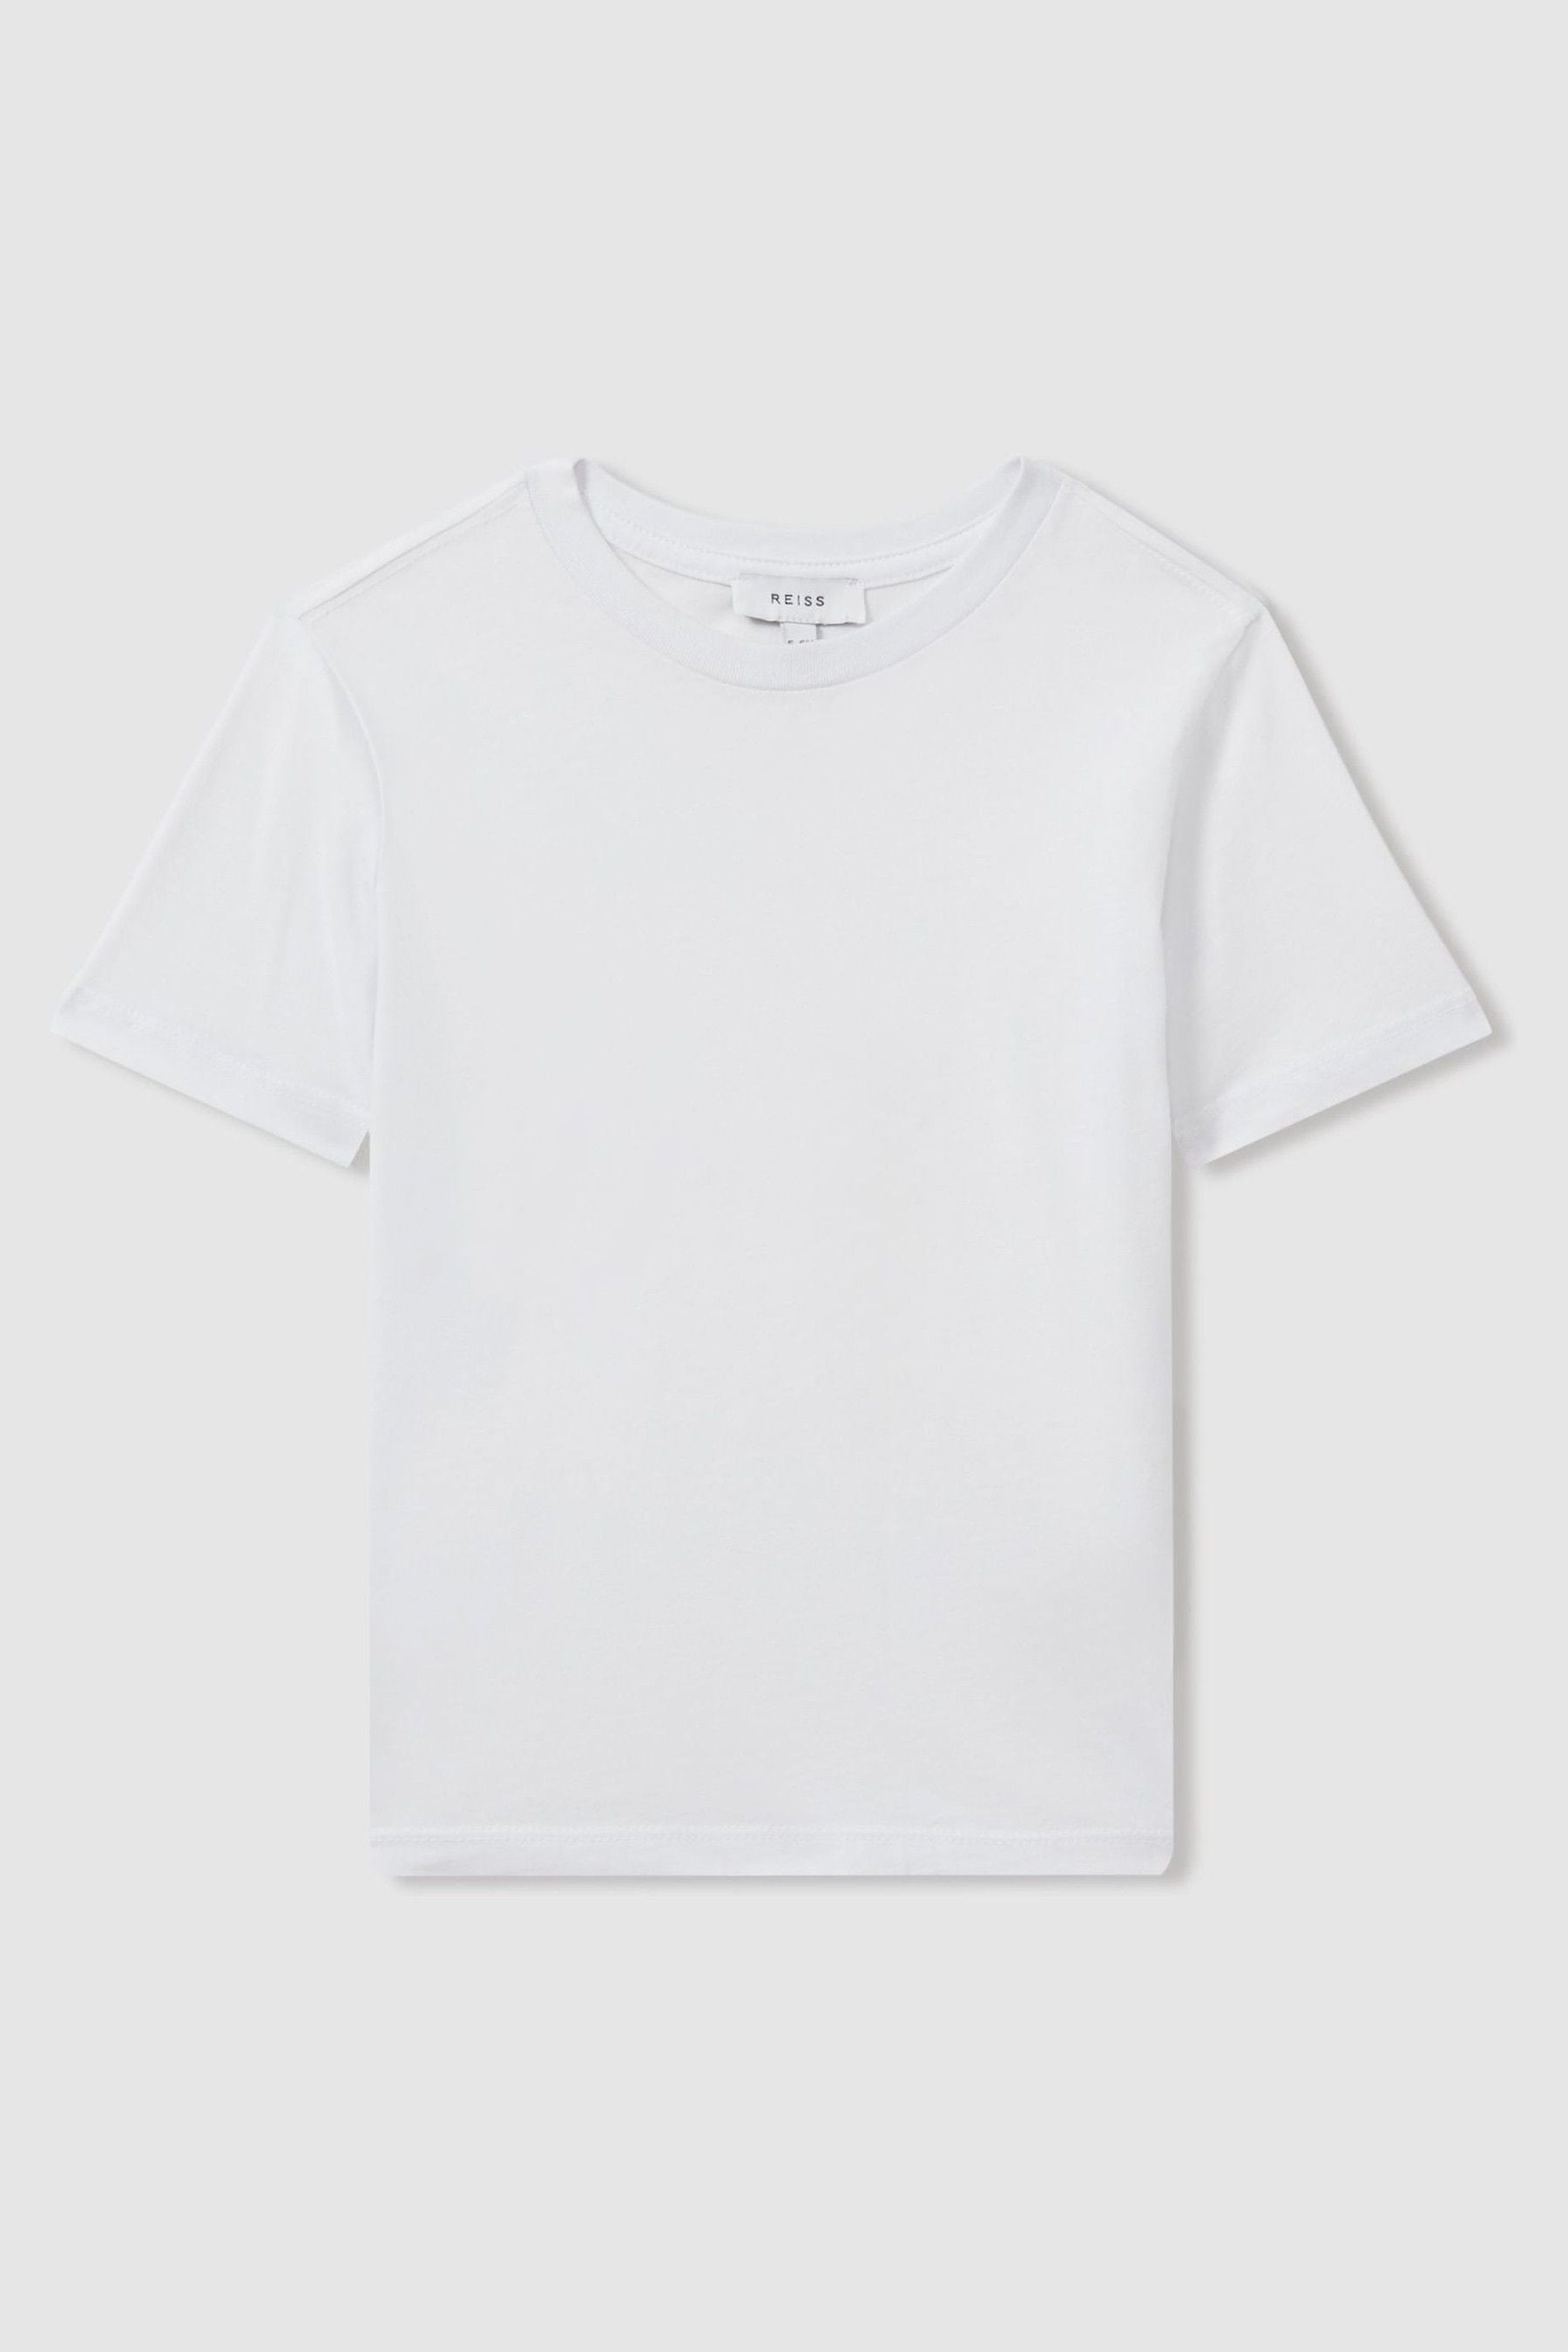 Reiss Kids' Bless - White Senior Crew Neck T-shirt, Uk 9-10 Yrs